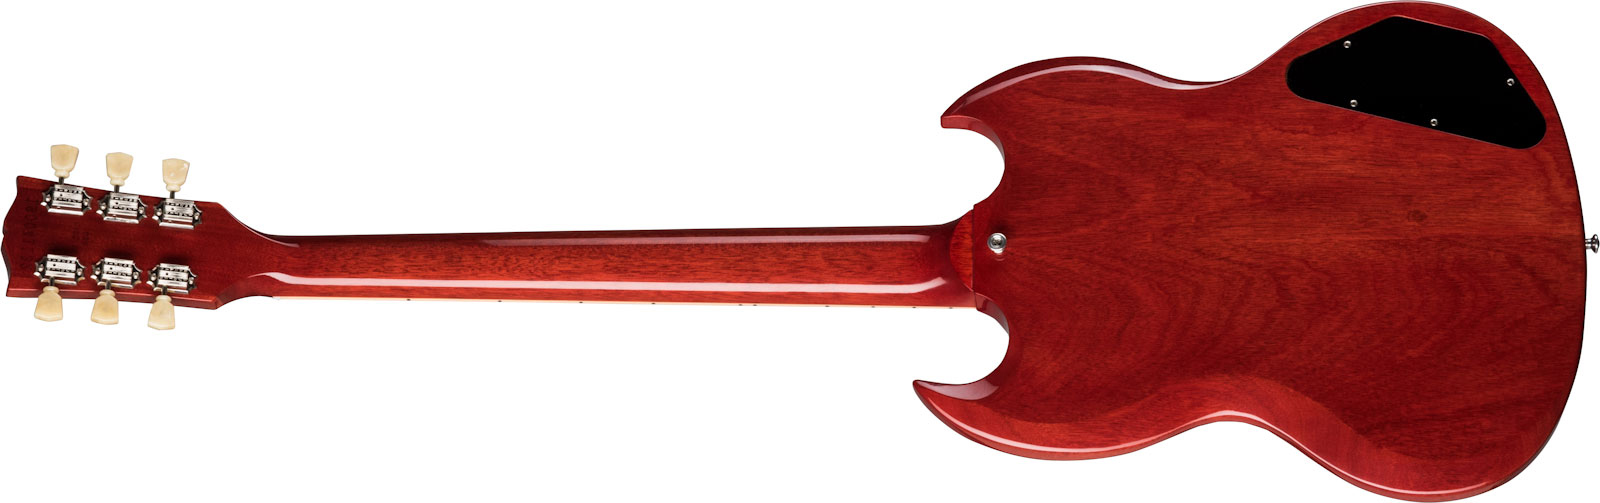 Gibson Sg Standard '61 Lh Gaucher 2h Ht Rw - Vintage Cherry - E-Gitarre für Linkshänder - Variation 1